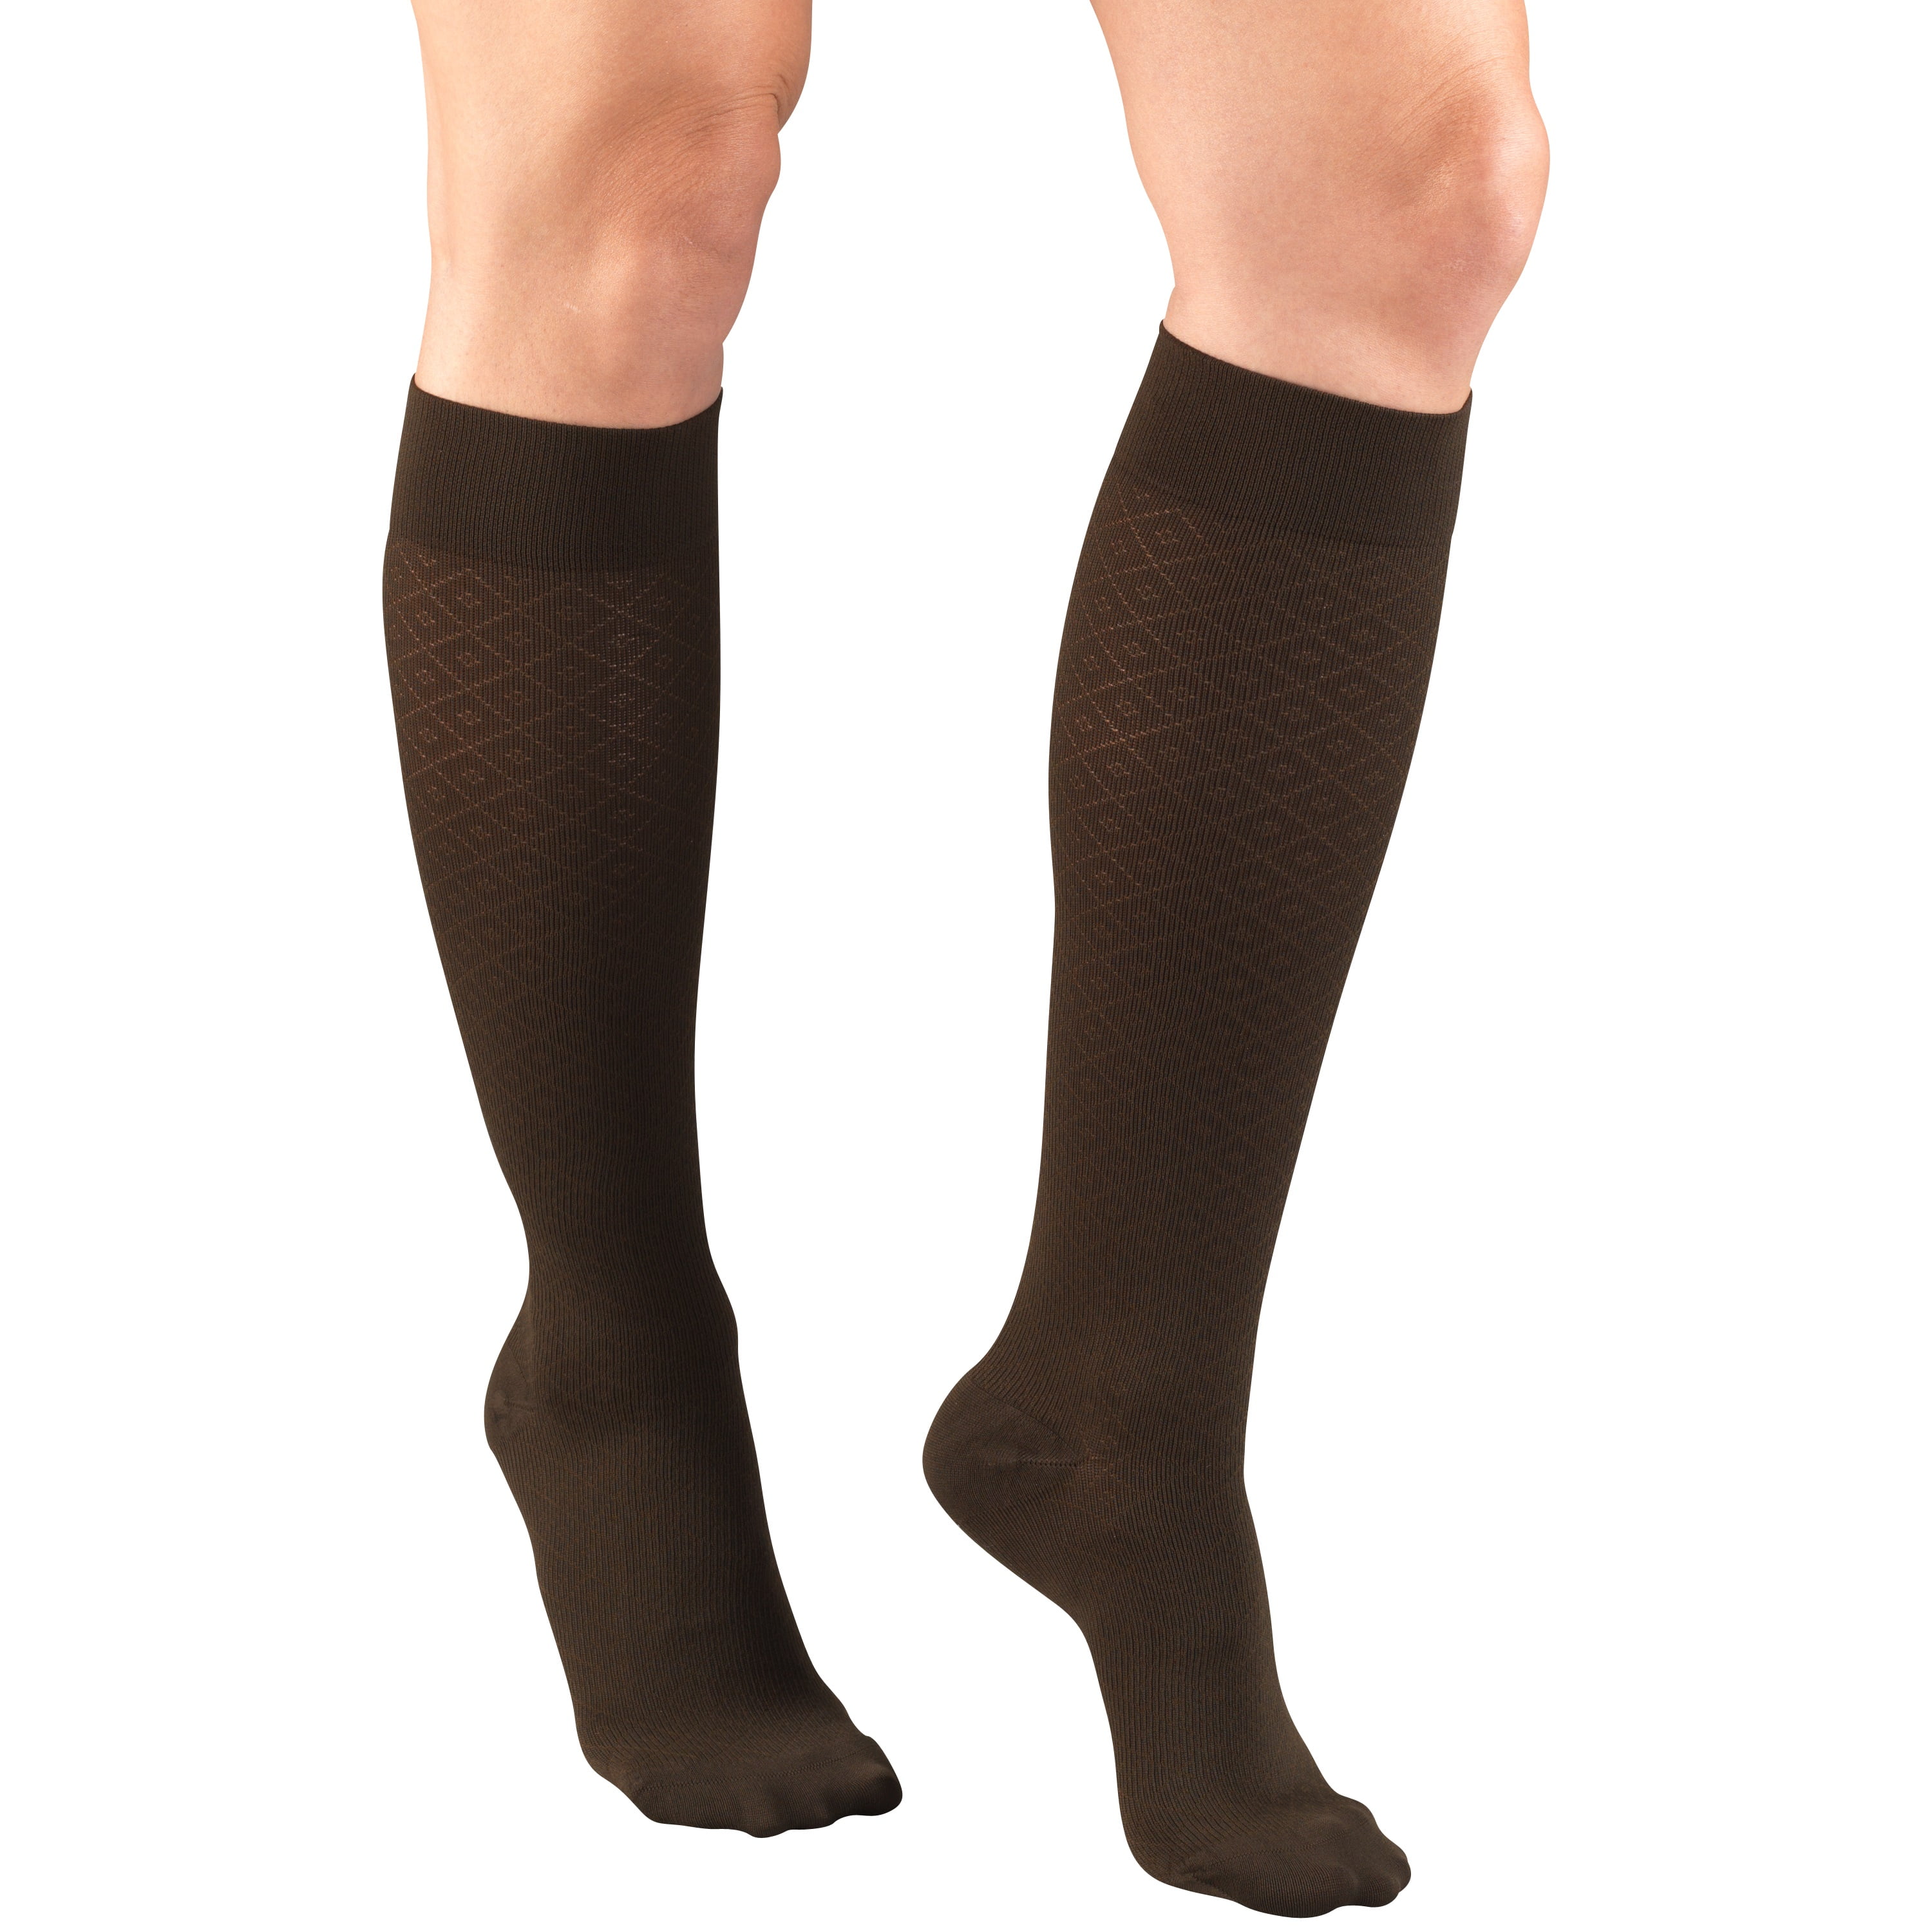 Truform Women's Trouser Socks, Dress Style, Diamond Pattern: 15-20 mmHg ...